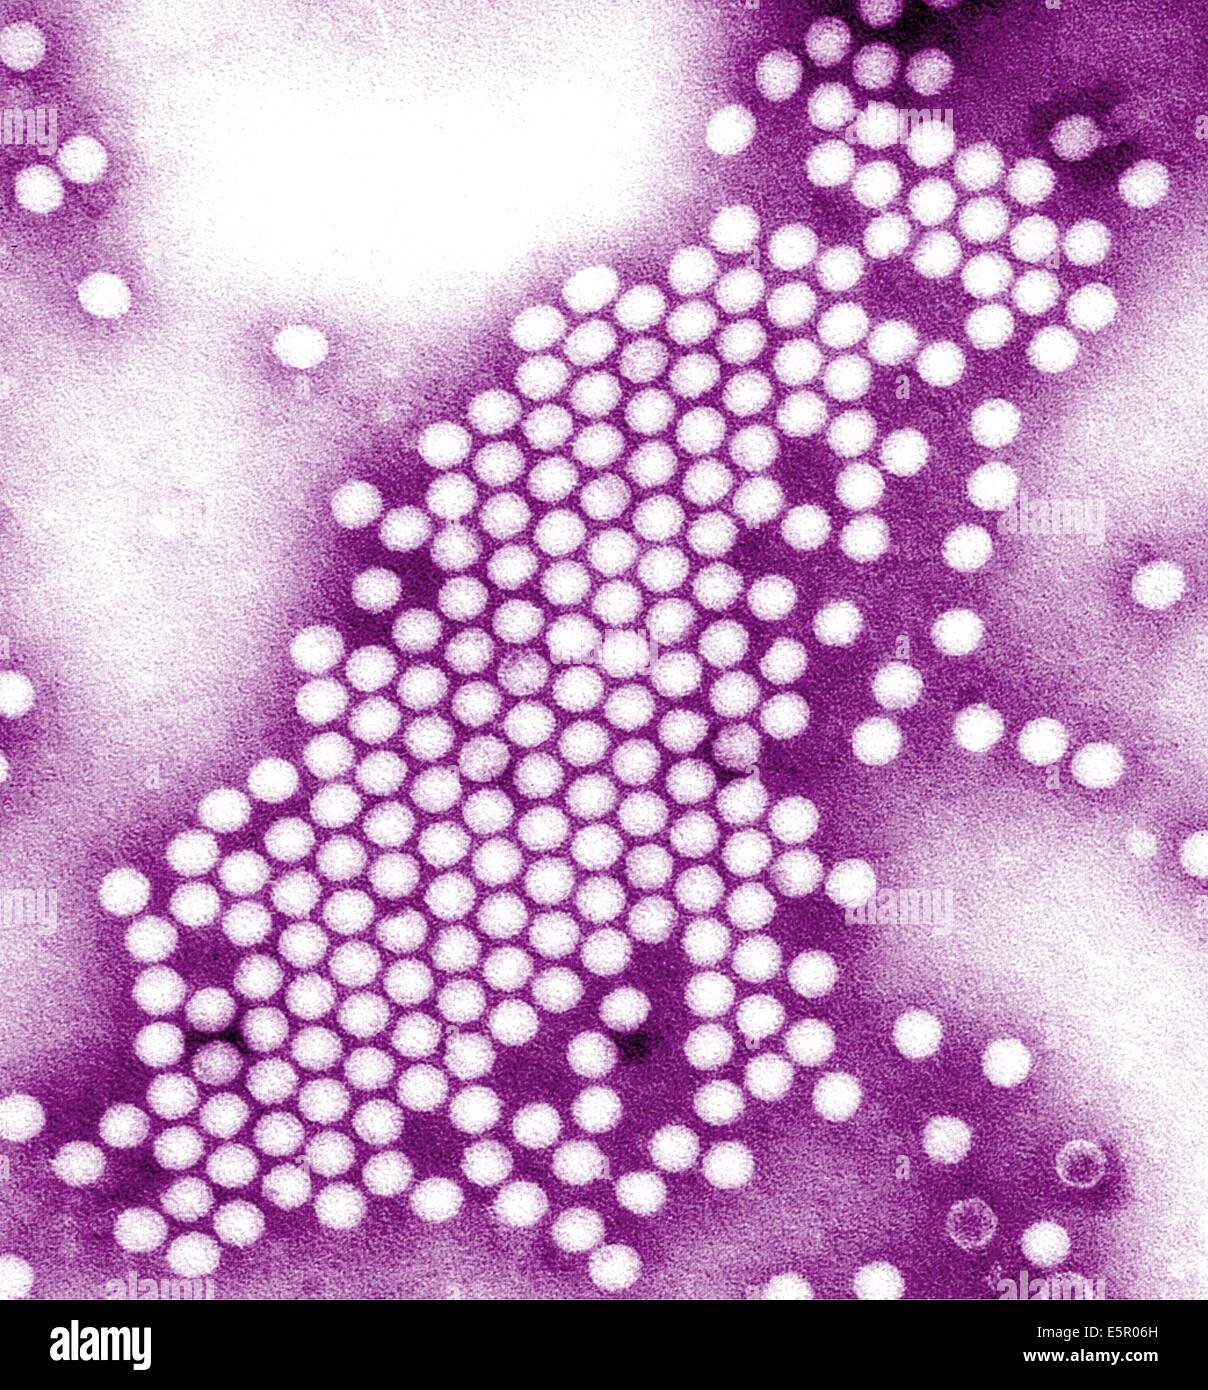 Transmission Electron Micrograph (TEM) of poliovirus, an RNA enterovirus responsable for poliomyelitis. Stock Photo